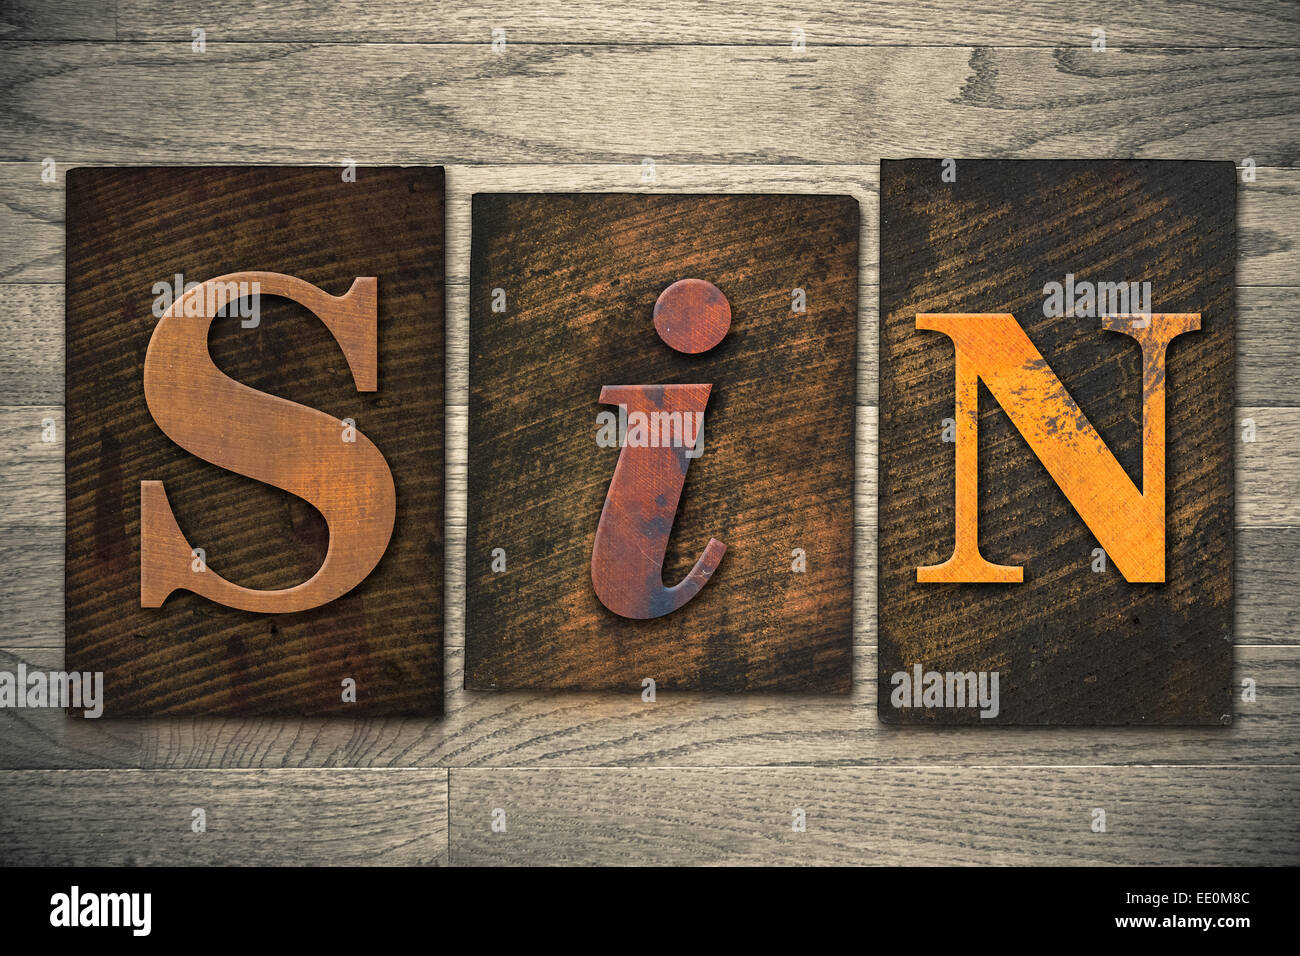 The word 'SIN' written in wooden letterpress type. Stock Photo